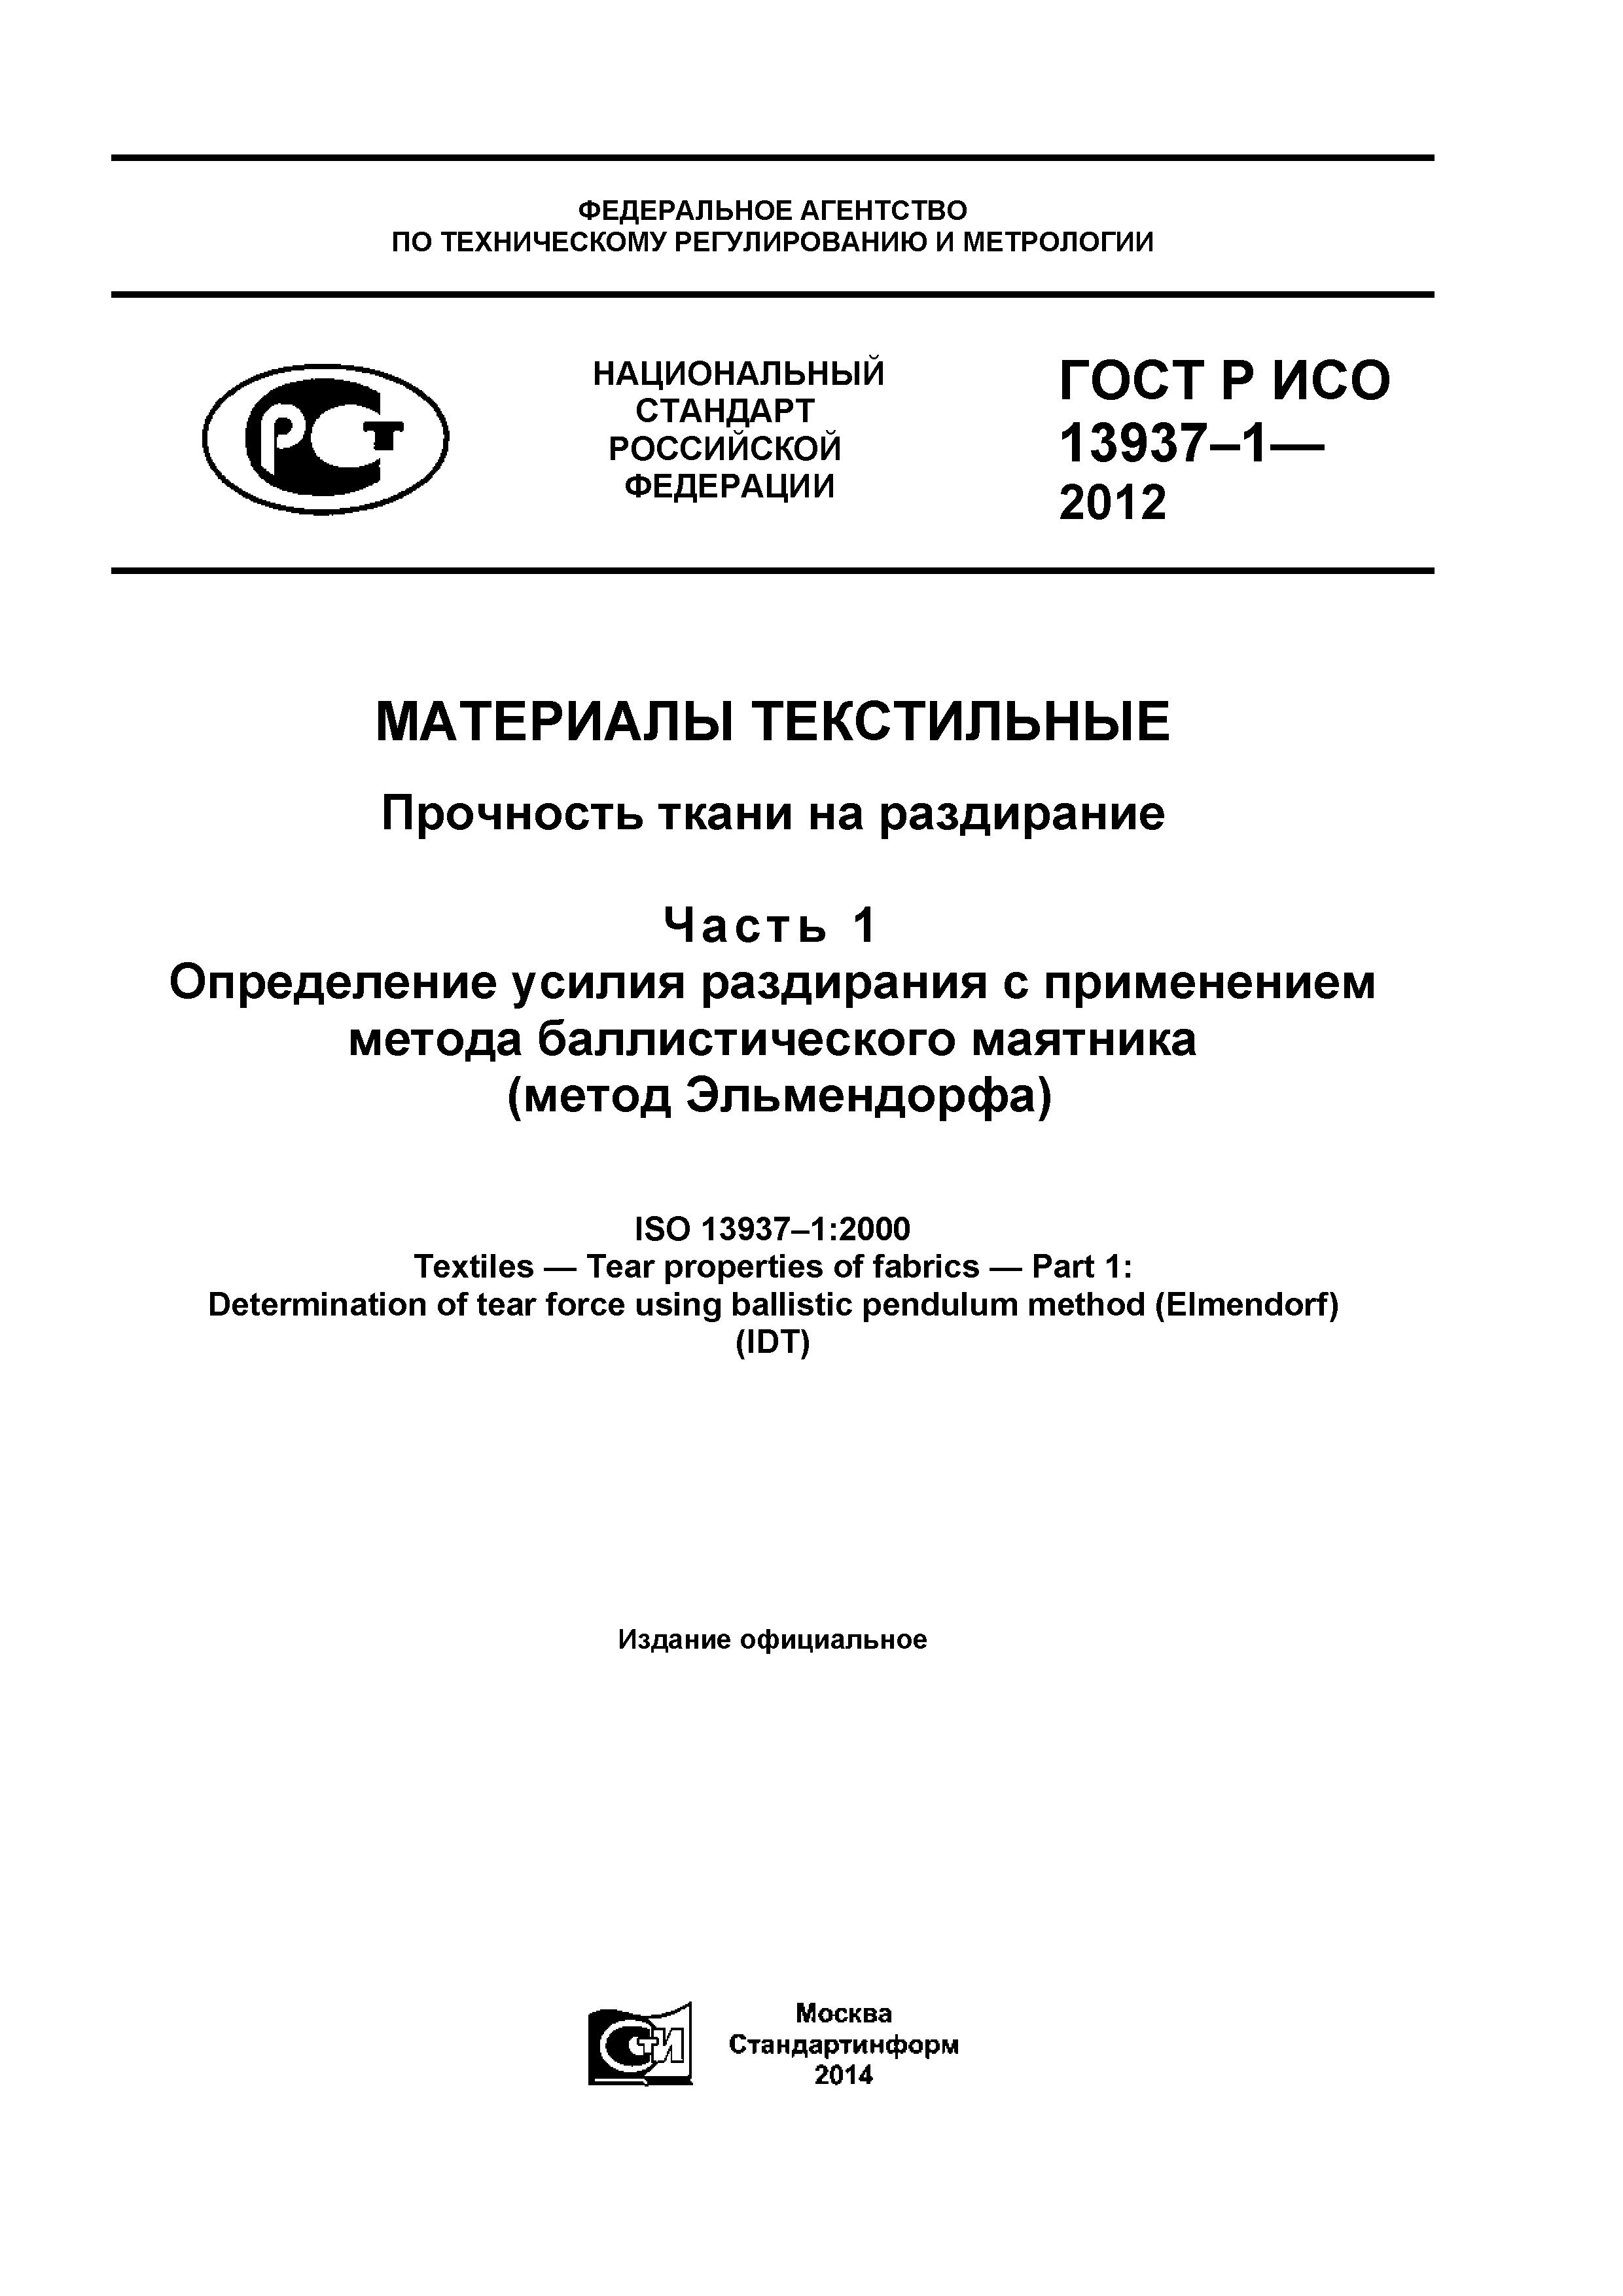 ГОСТ Р ИСО 13937-1-2012